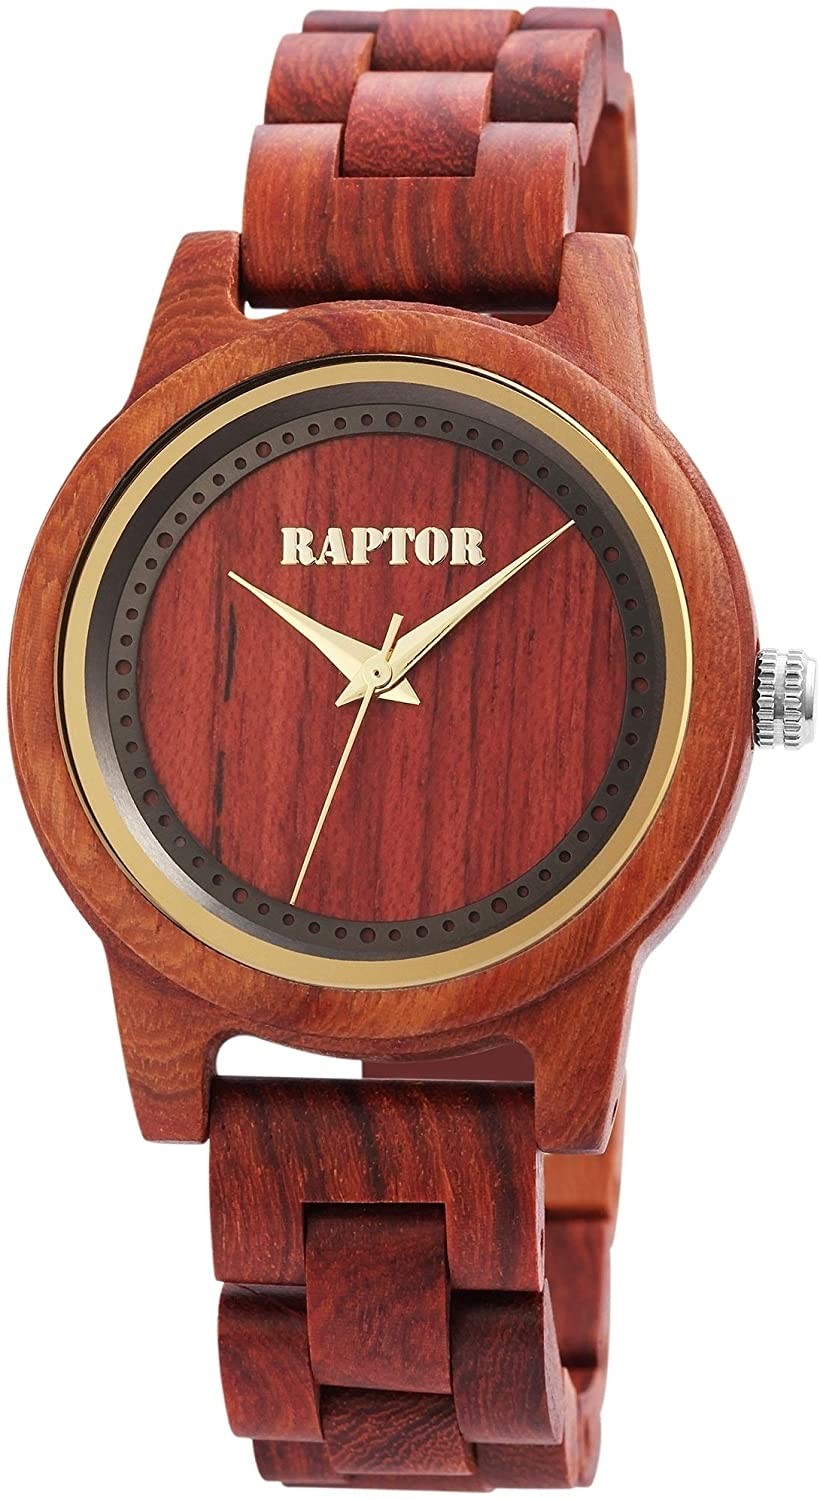 Dámské dřevěné hodinky Raptor 4049096782229 použité zboží